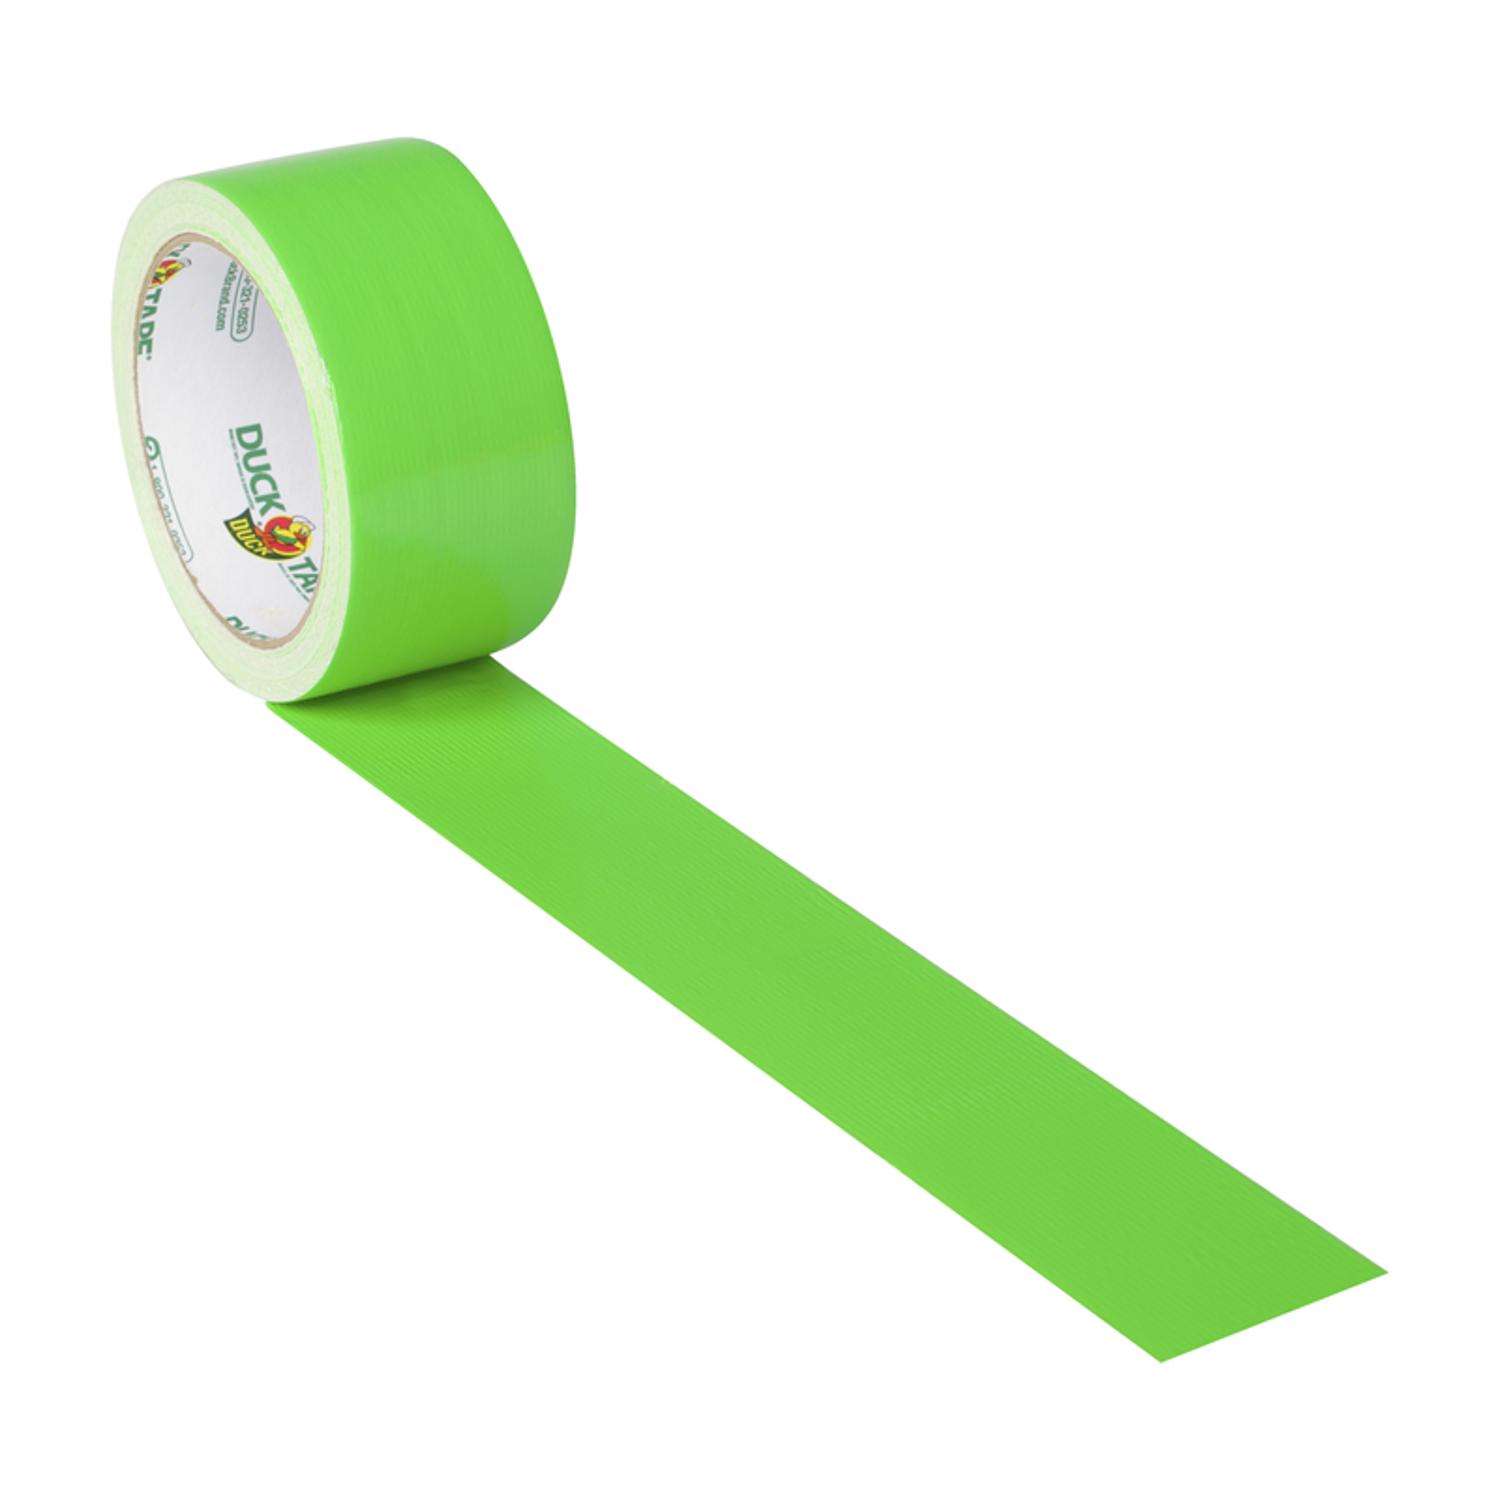 2 x 60 yds Light Green Tape Logic™ Masking Tape 24 Rolls / Case